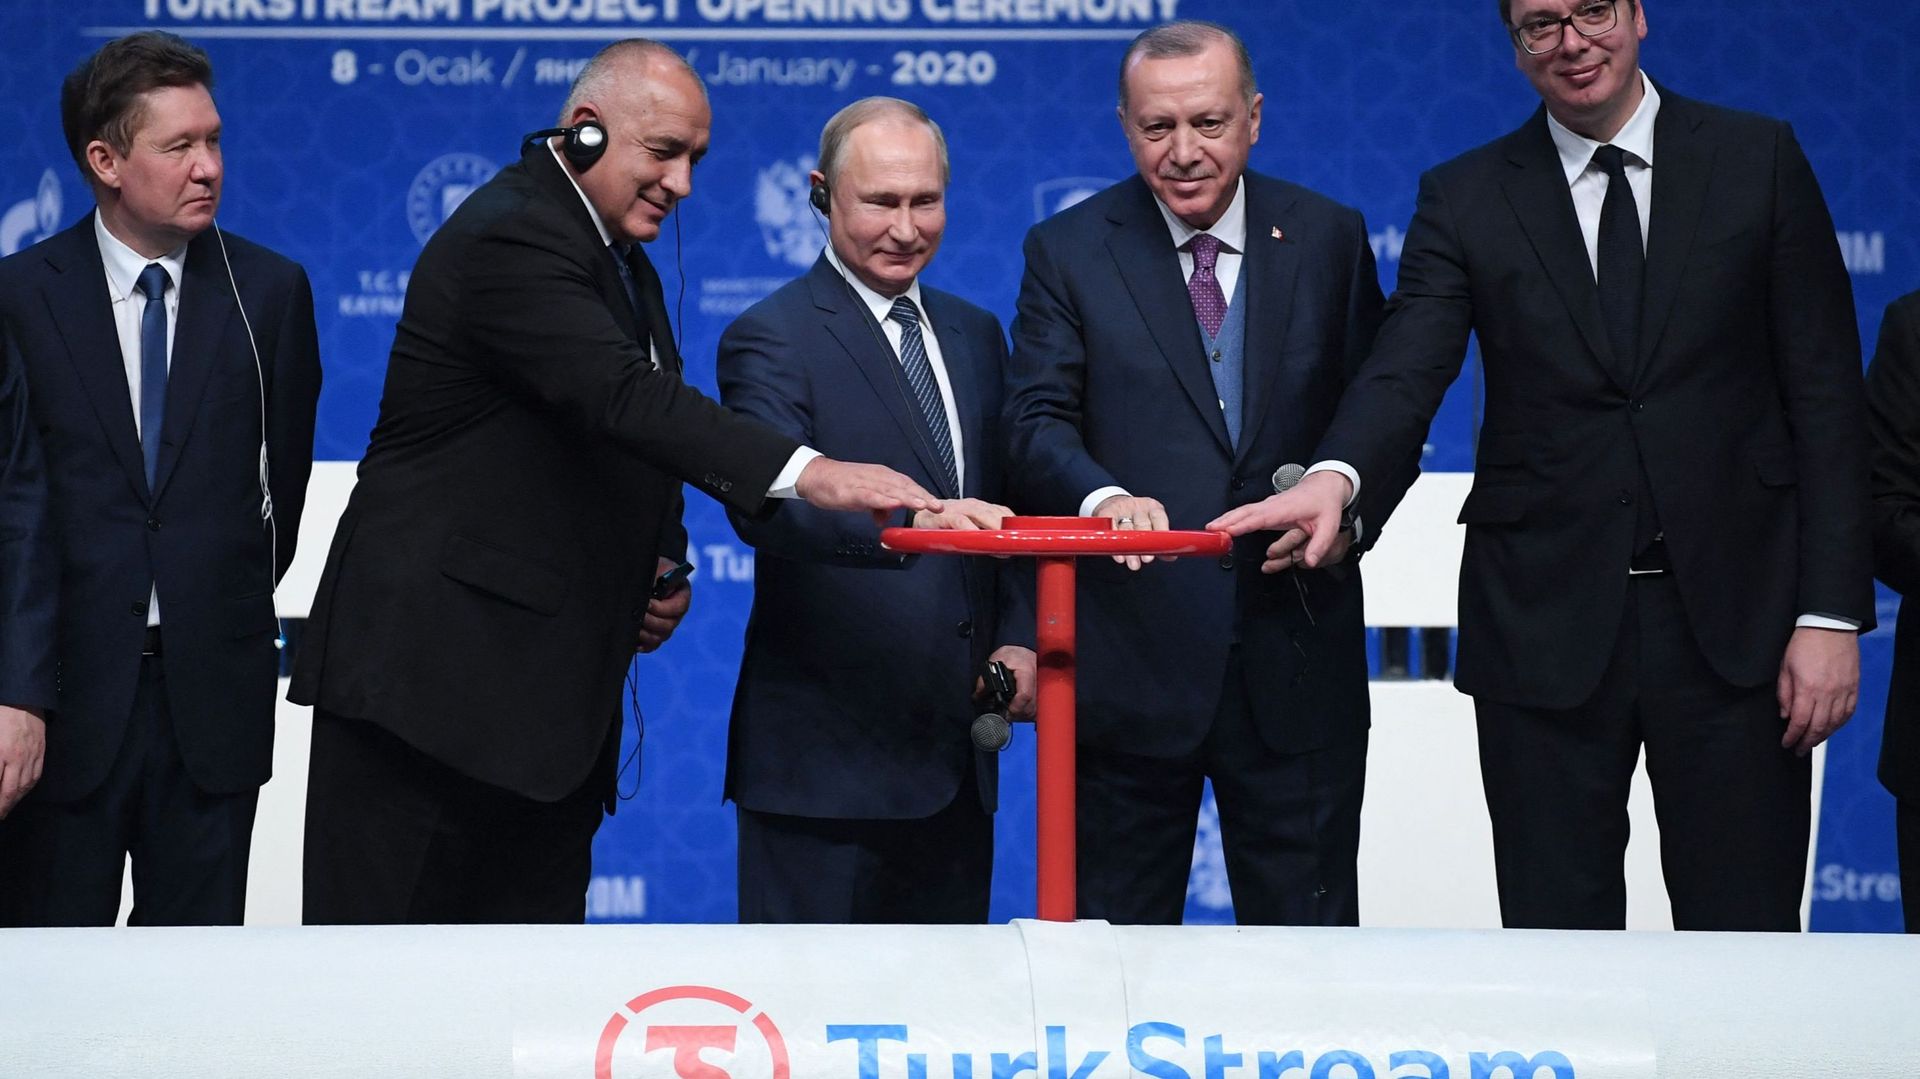 Le Président russe, Vladimir Poutine et le Président turc, Recep Tayyip Erdogan assistent à la cérémonie d’inauguration du nouveau gazoduc, TurkStream, le 8 janvier 2020 à Istanbul.